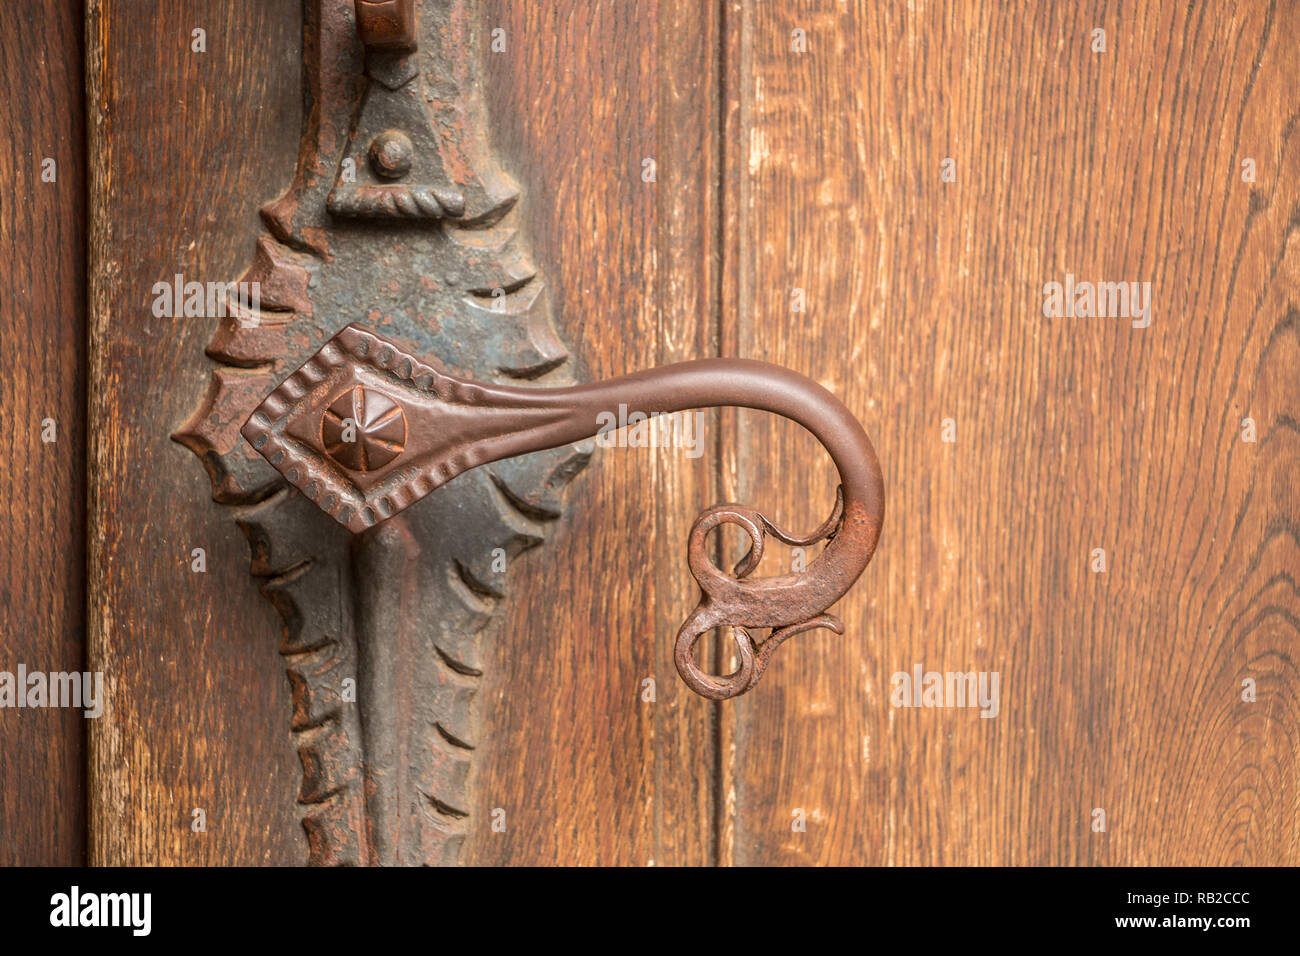 La manija de la puerta de un edificio antiguo de hierro Foto de stock